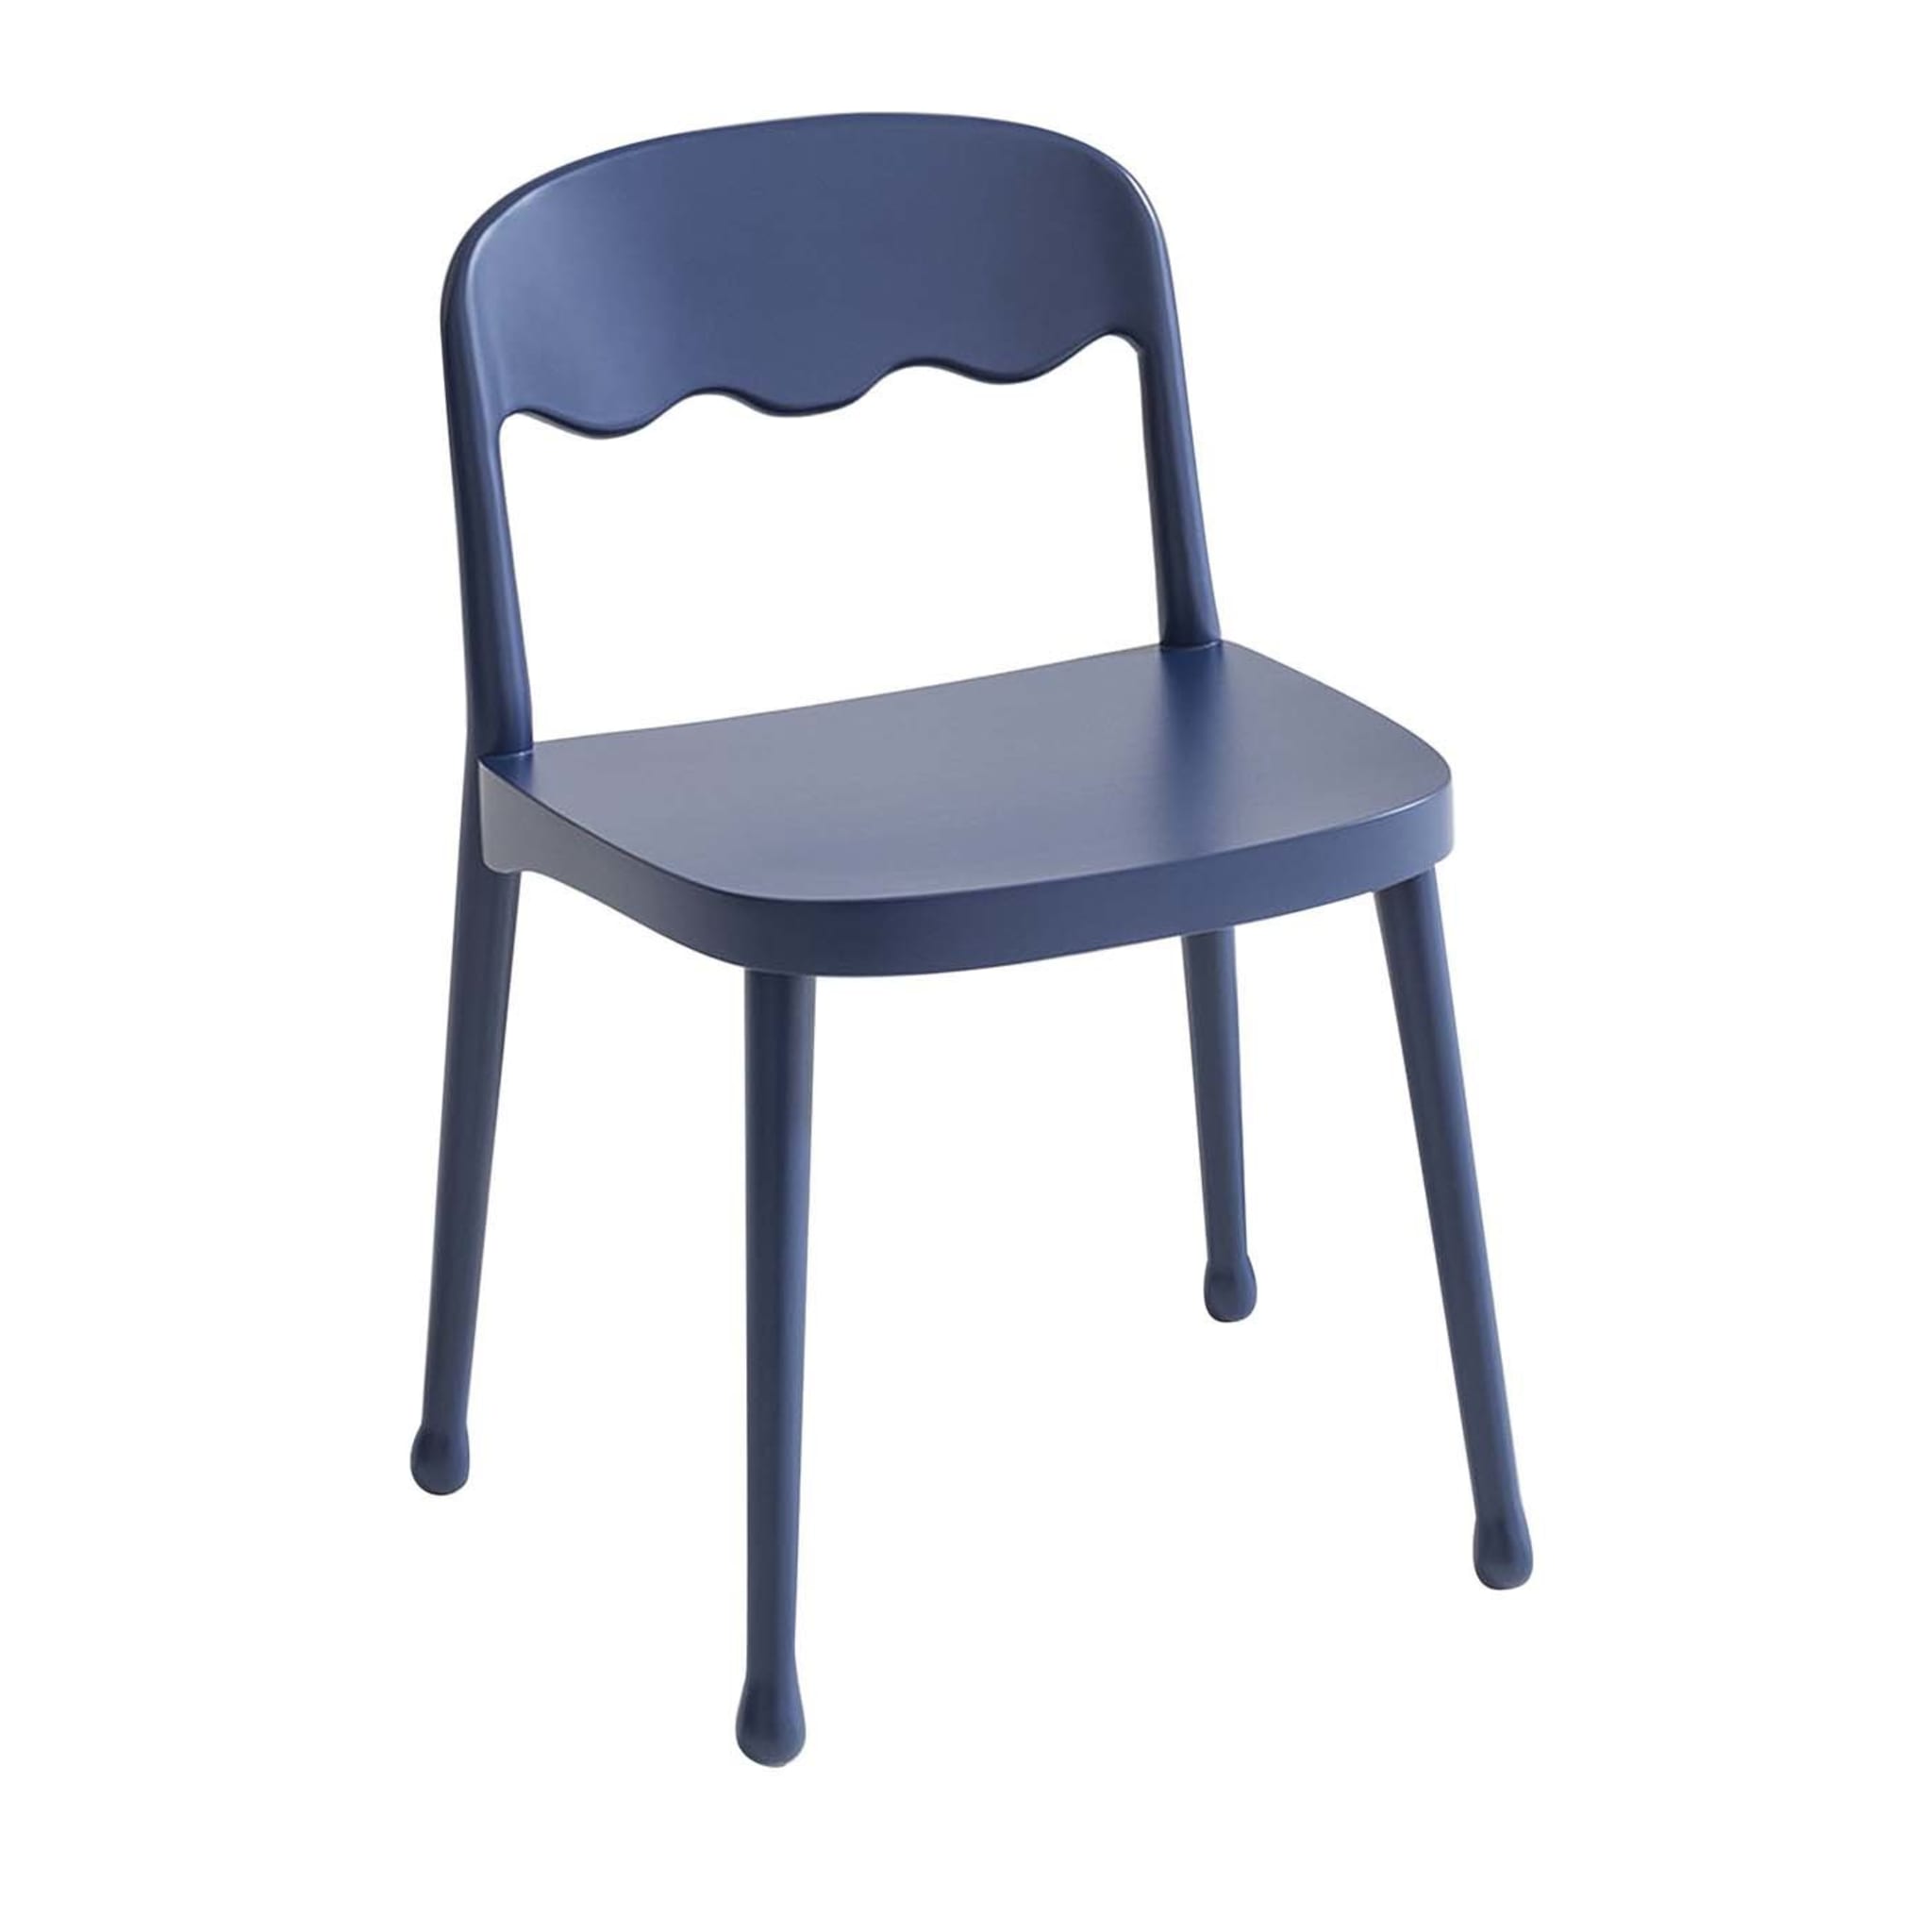 Frisée 250 Blue Chair by Cristina Celestino - Main view